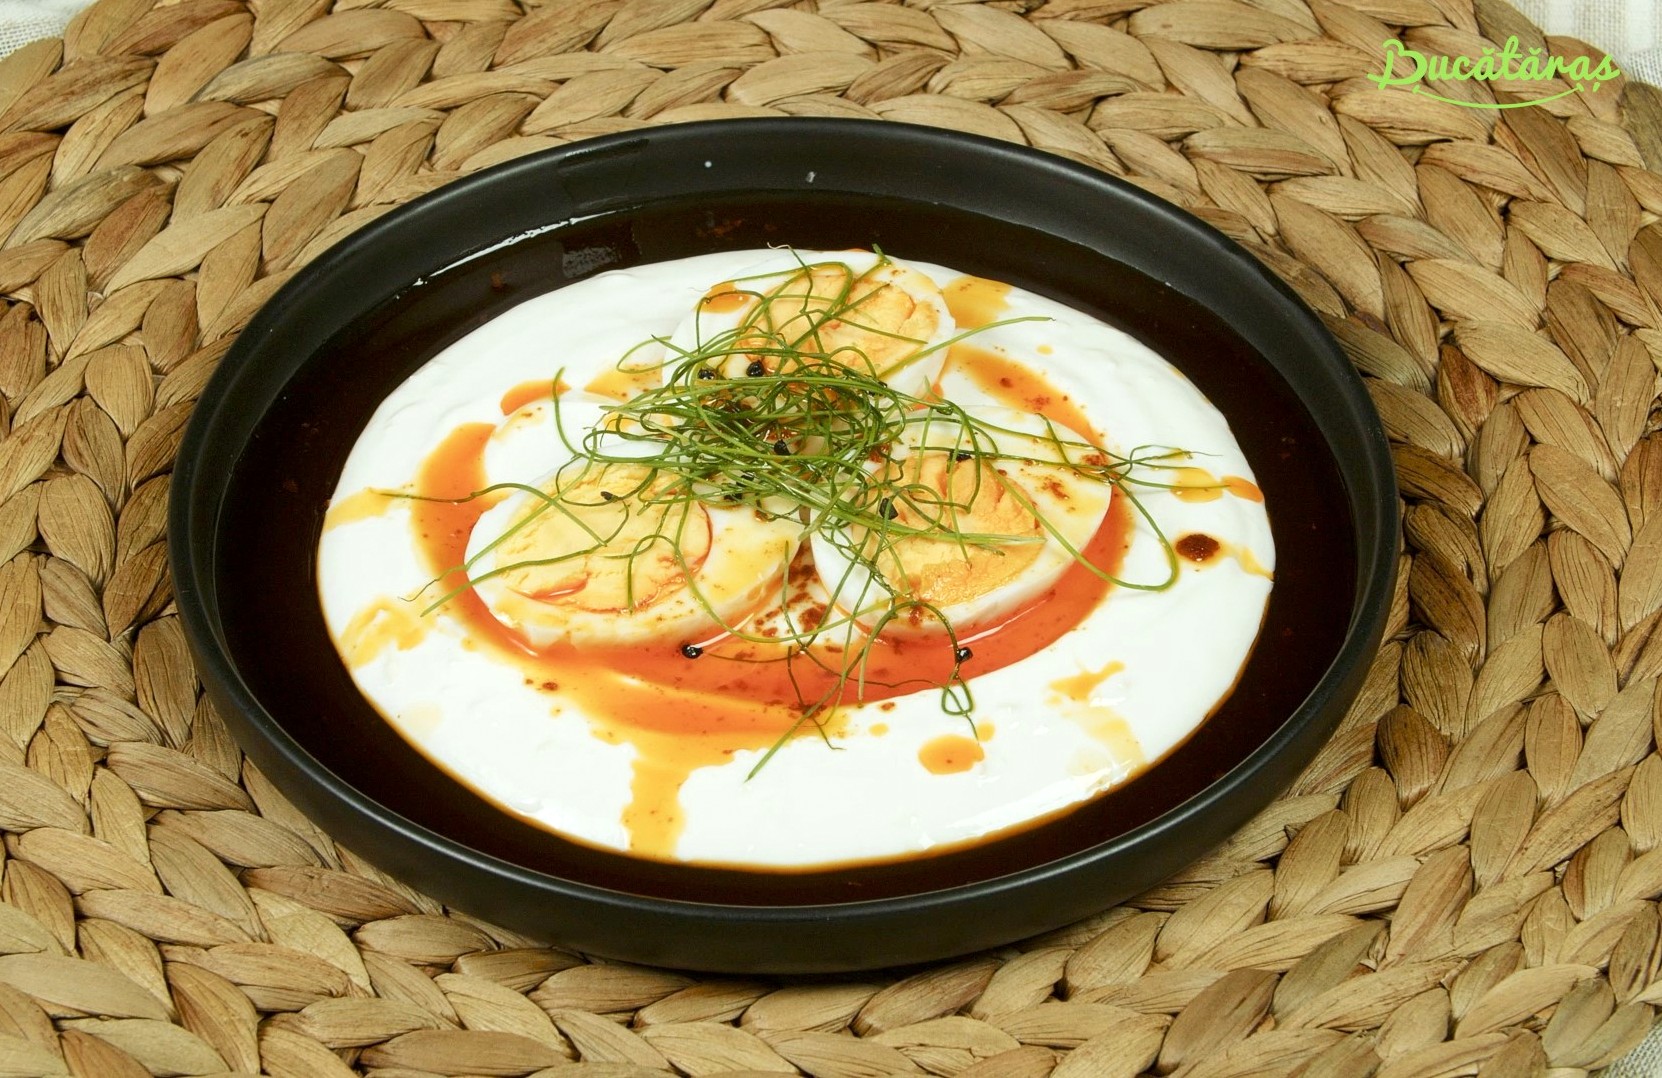 Mic dejun cu ouă turcești - Un deliciu culinar irezistibil de gustos și rapid